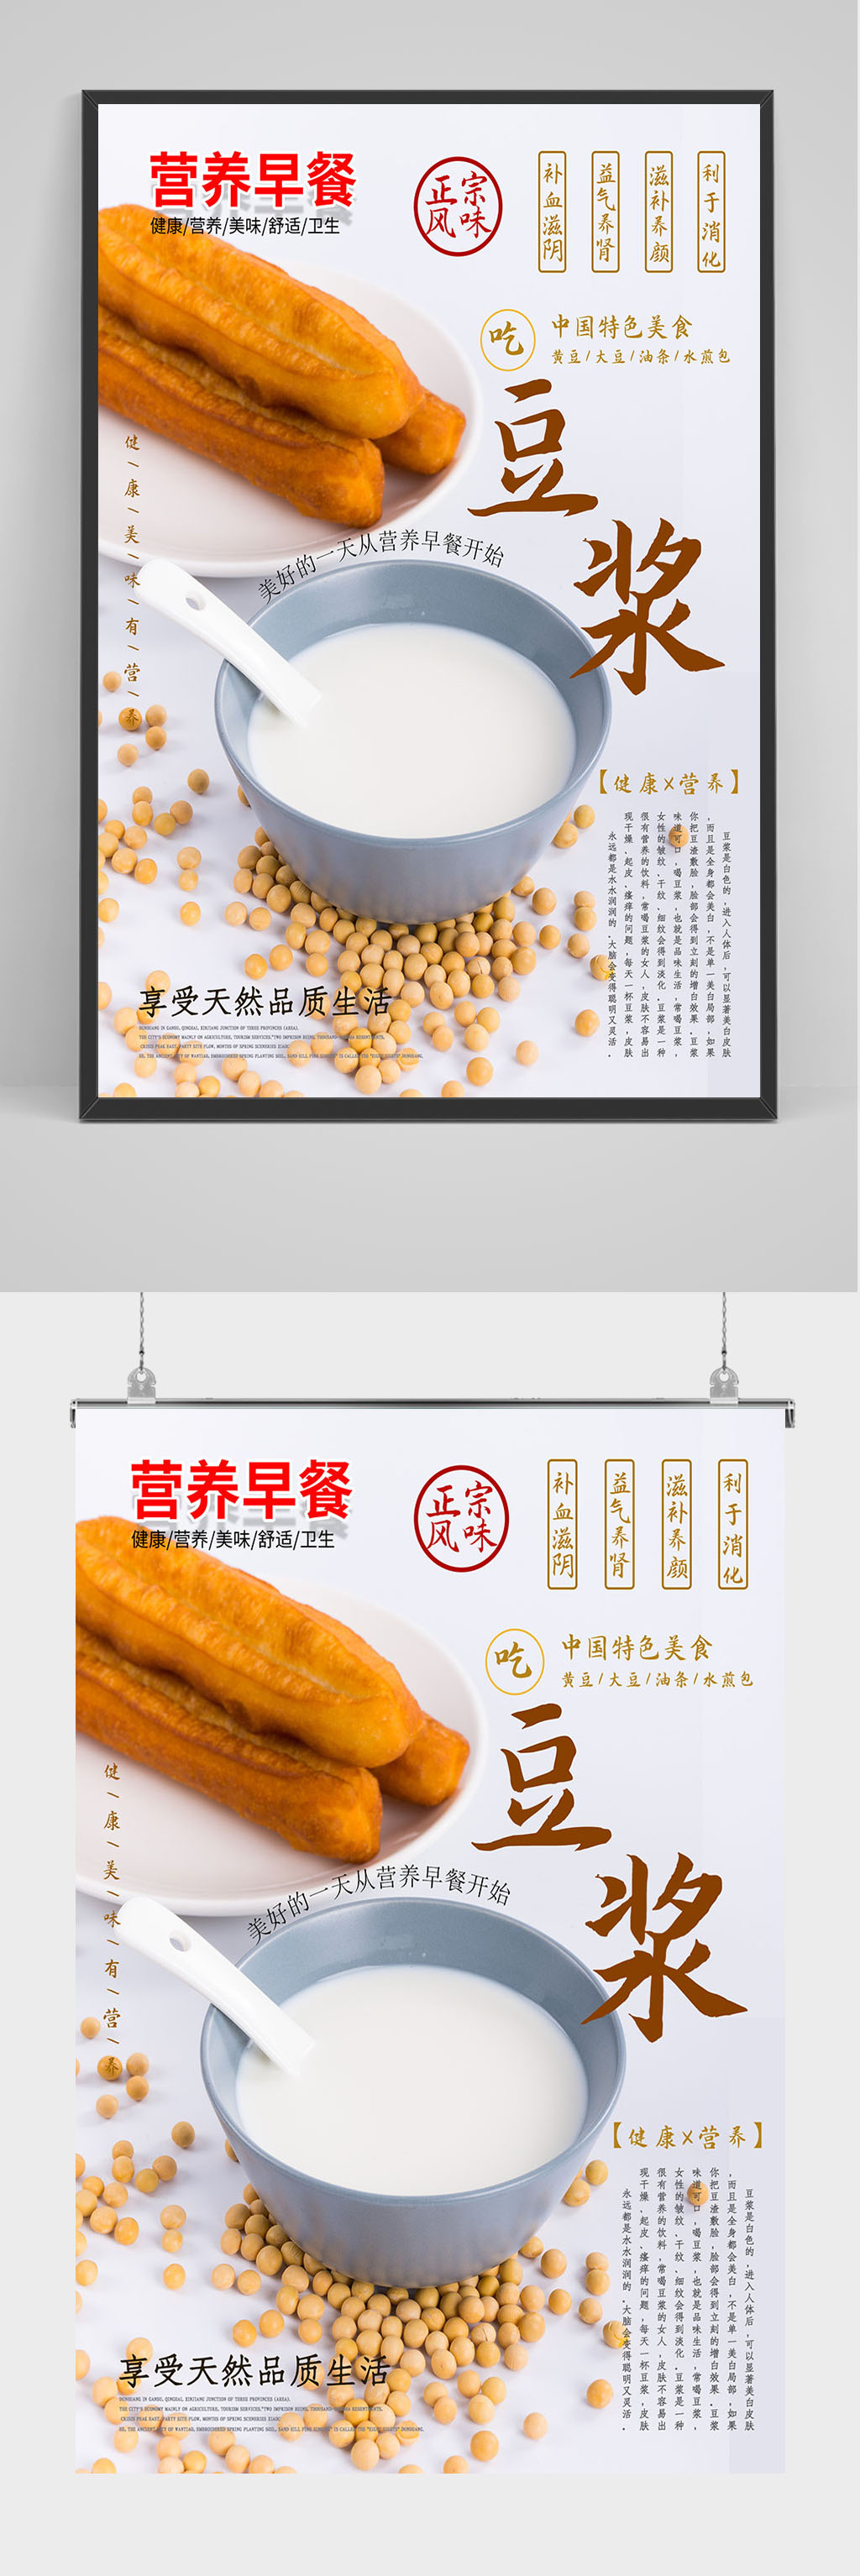 油条豆浆广告语和图片图片